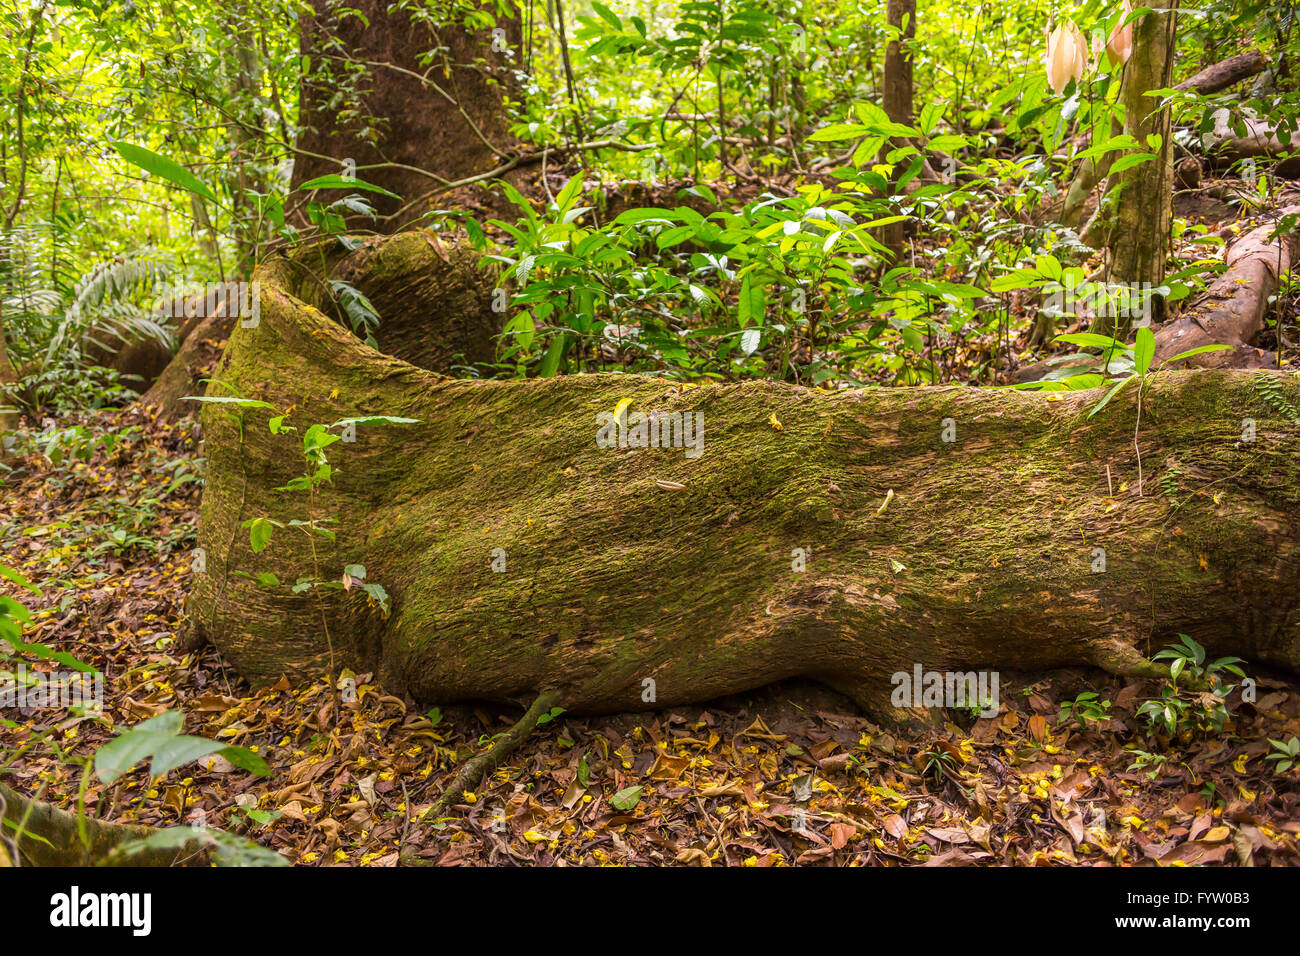 Península de Osa, Costa Rica - Masiva de raíz del árbol en el bosque lluvioso. Foto de stock